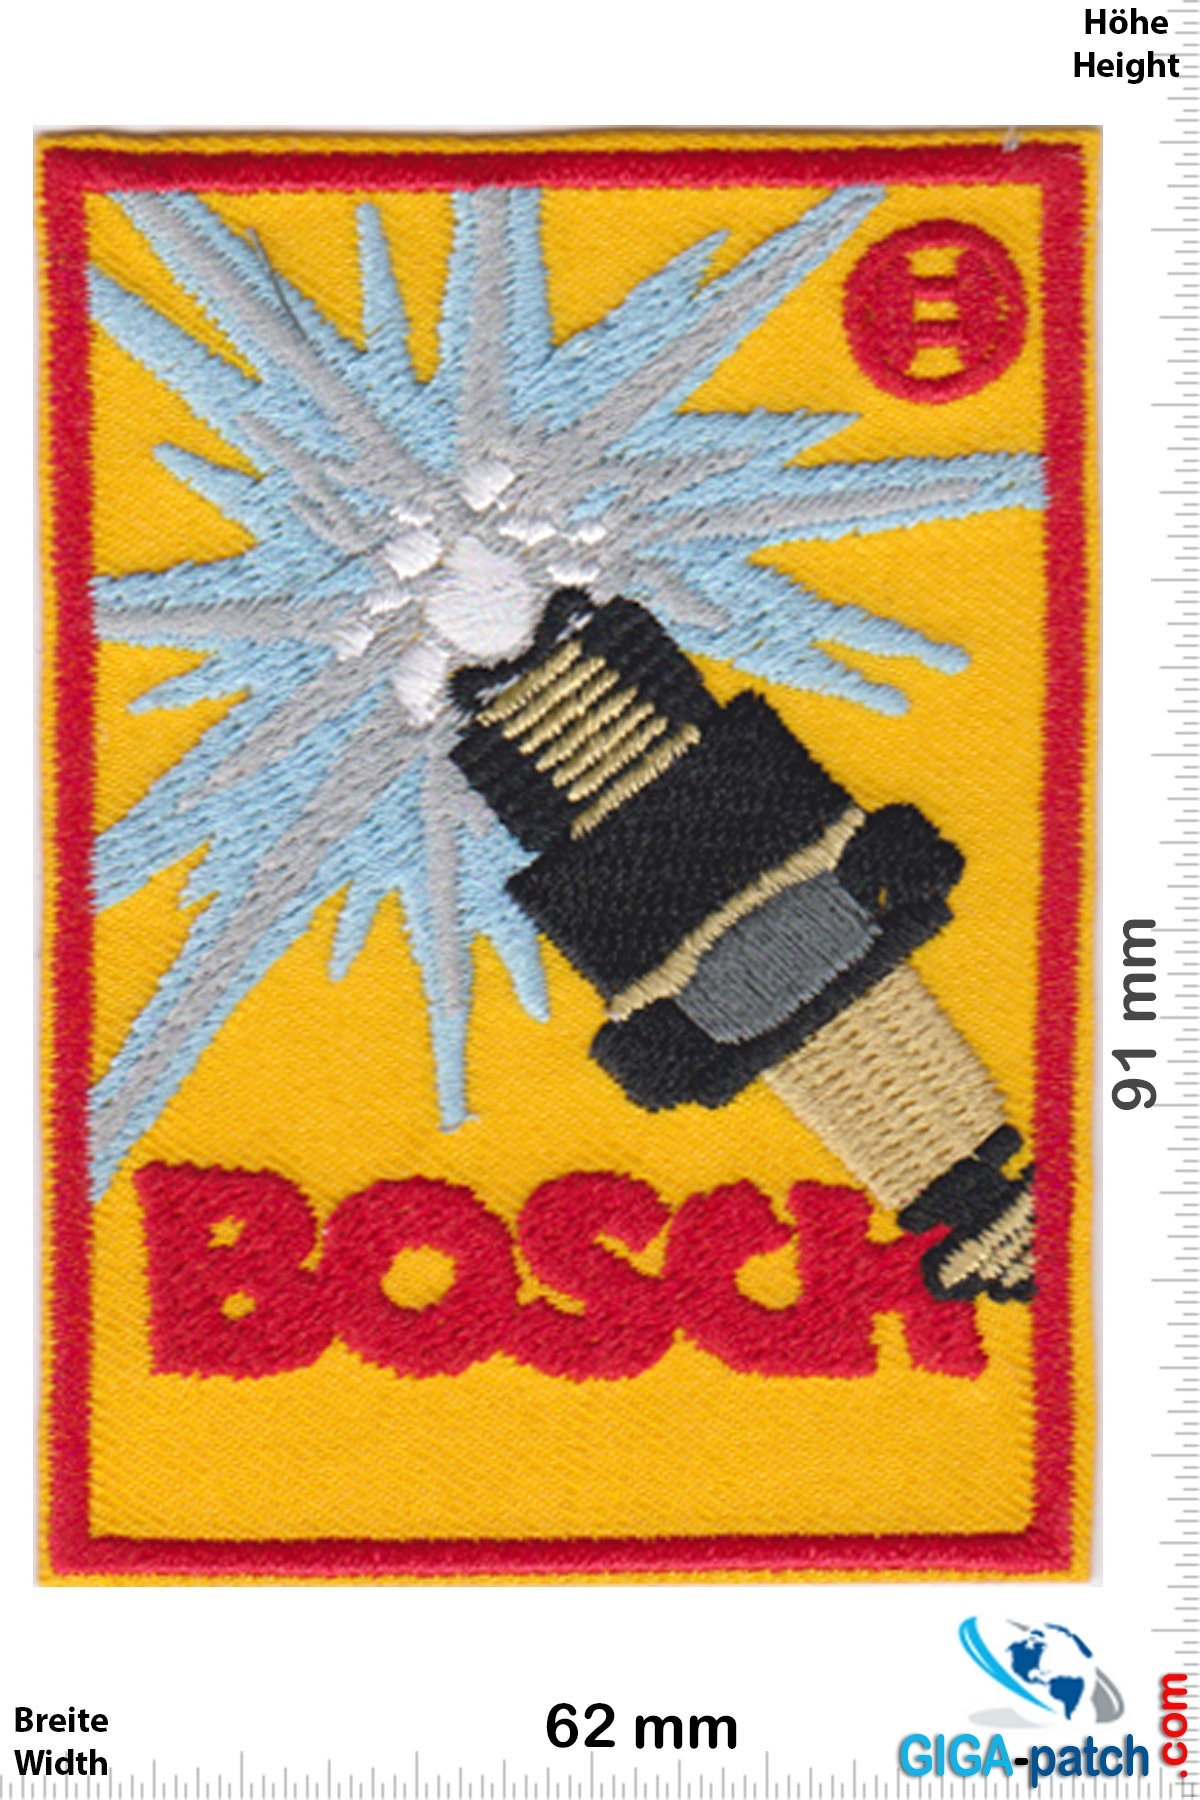 Bosch - Bosch - Zündkerzen - Spark- Patch- Aufnäher